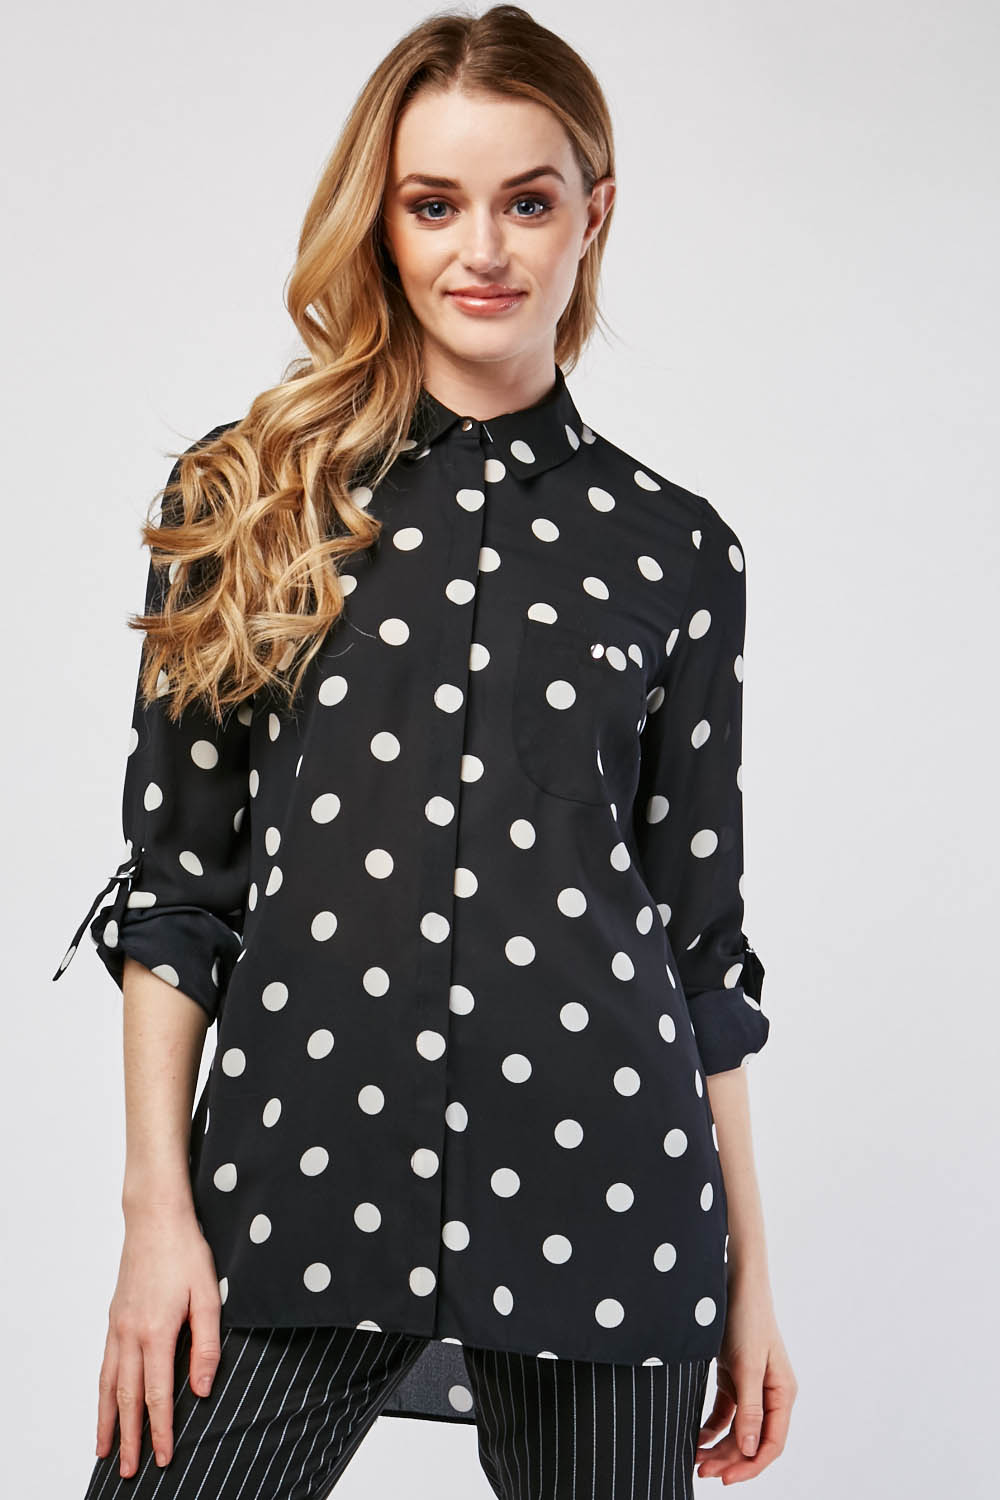 Polka Dot Sheer Chiffon Shirt - Just $7